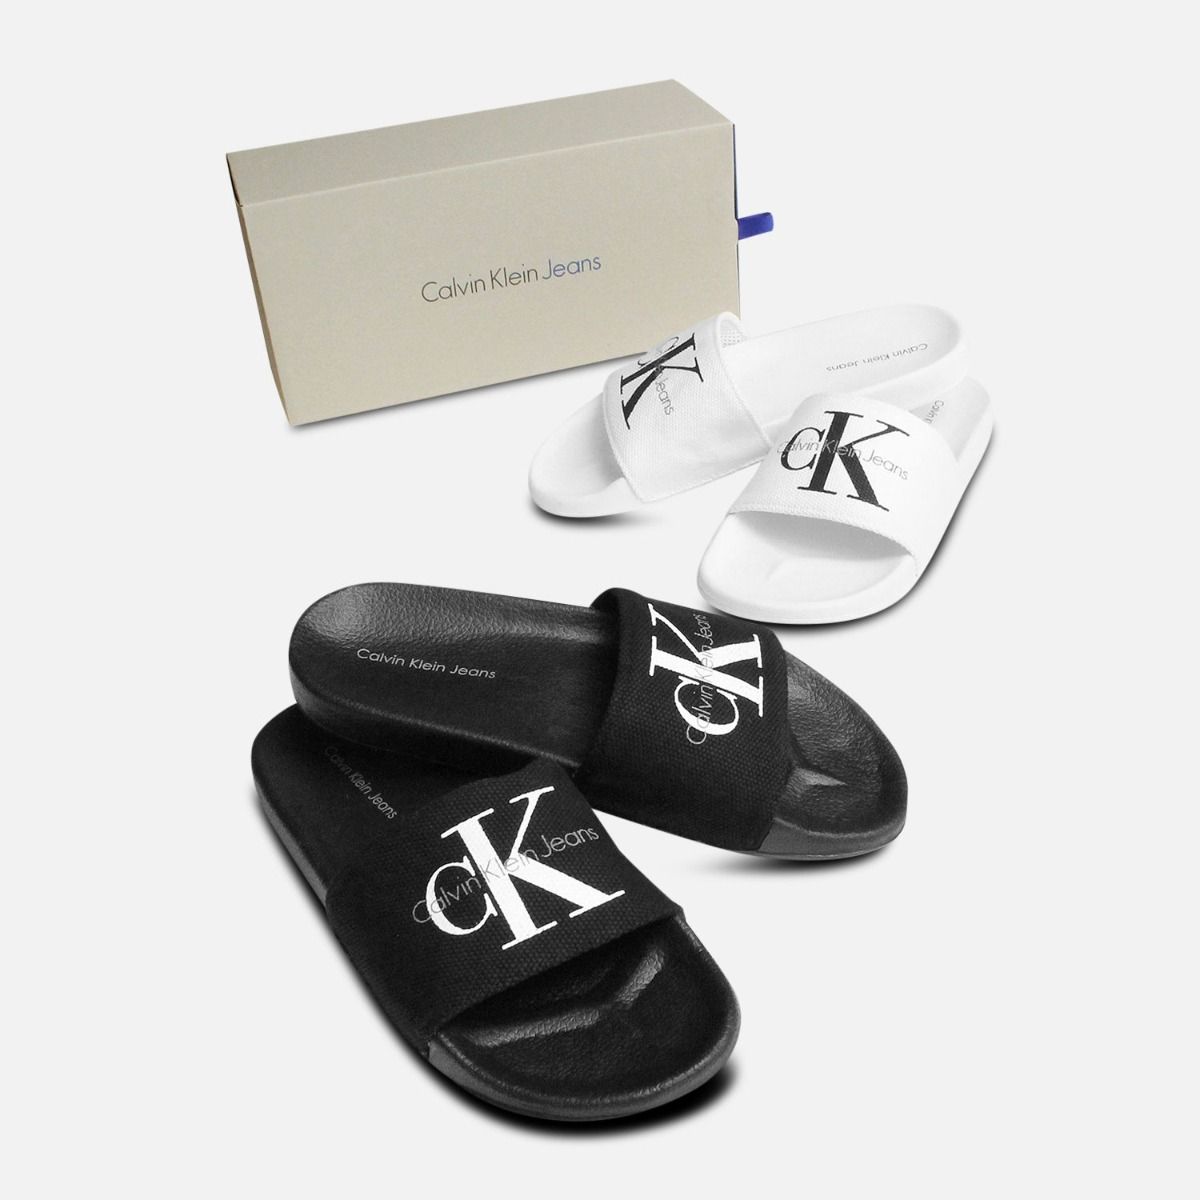 Calvin Klein Viggo Slides in Black Canvas Sandals